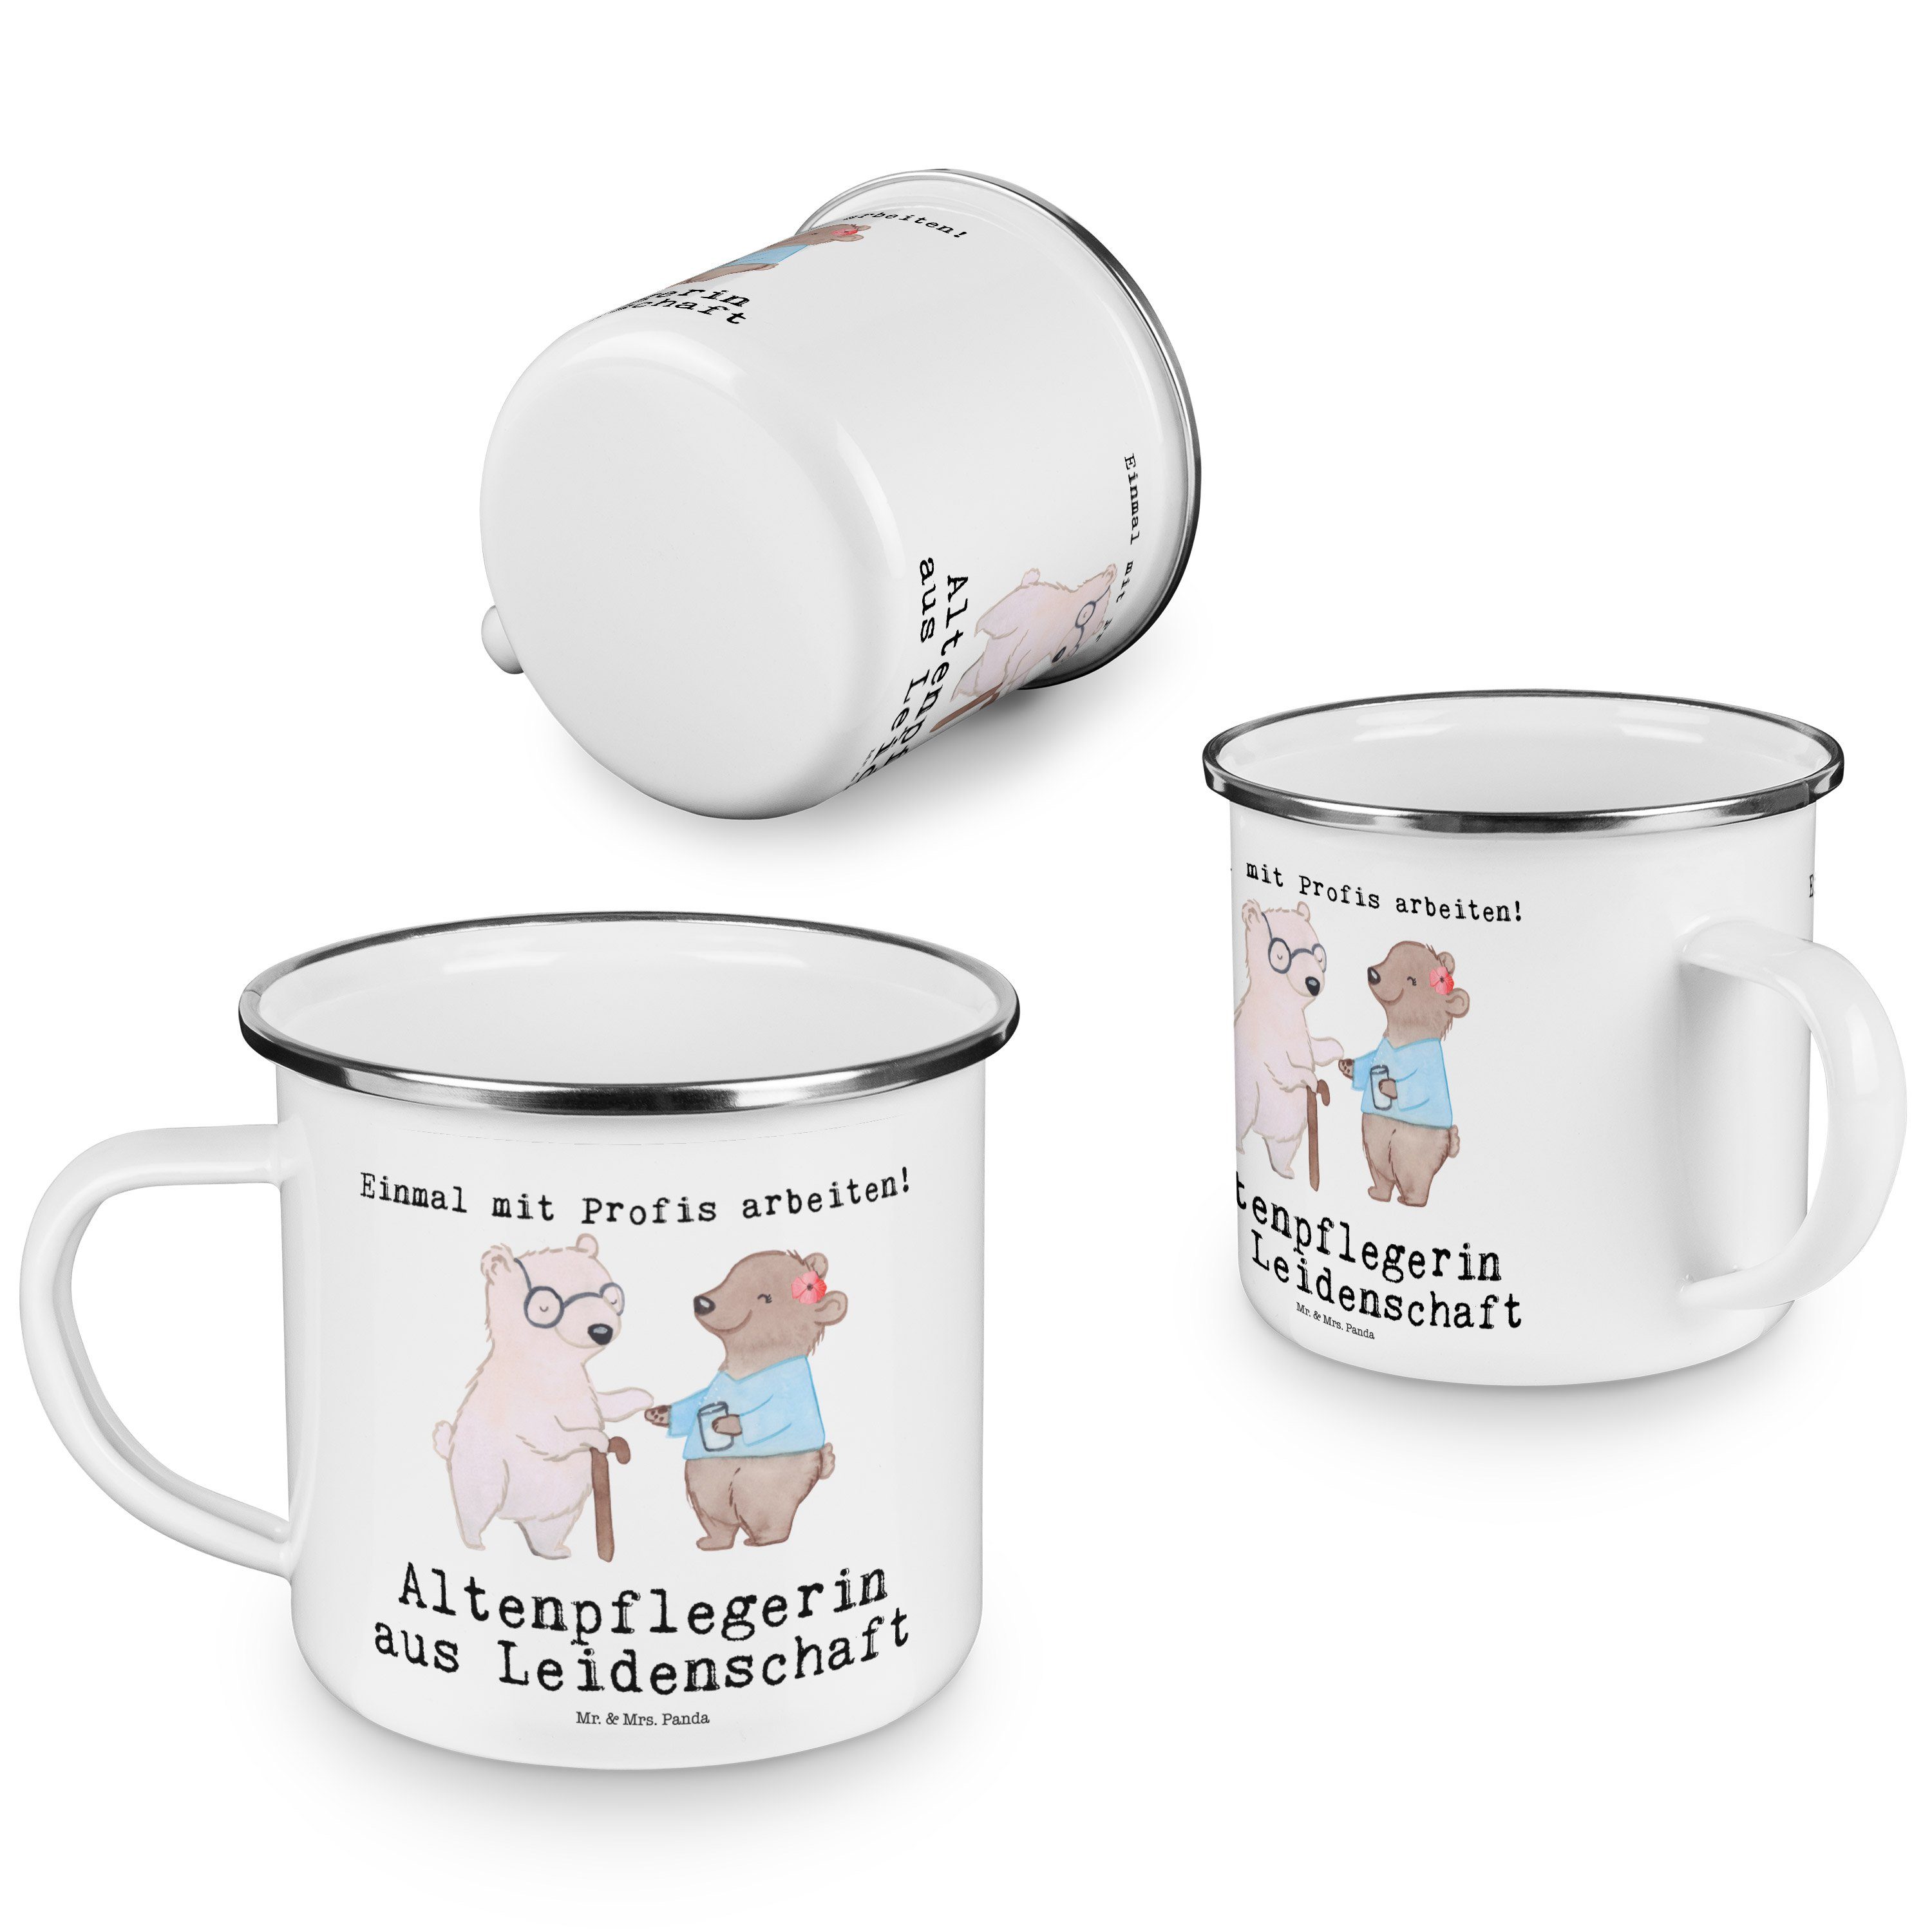 Mr. & Mrs. Panda Emaille Emaille Trinkbeche, aus Leidenschaft Weiß Altenpflegerin Becher - Geschenk, 